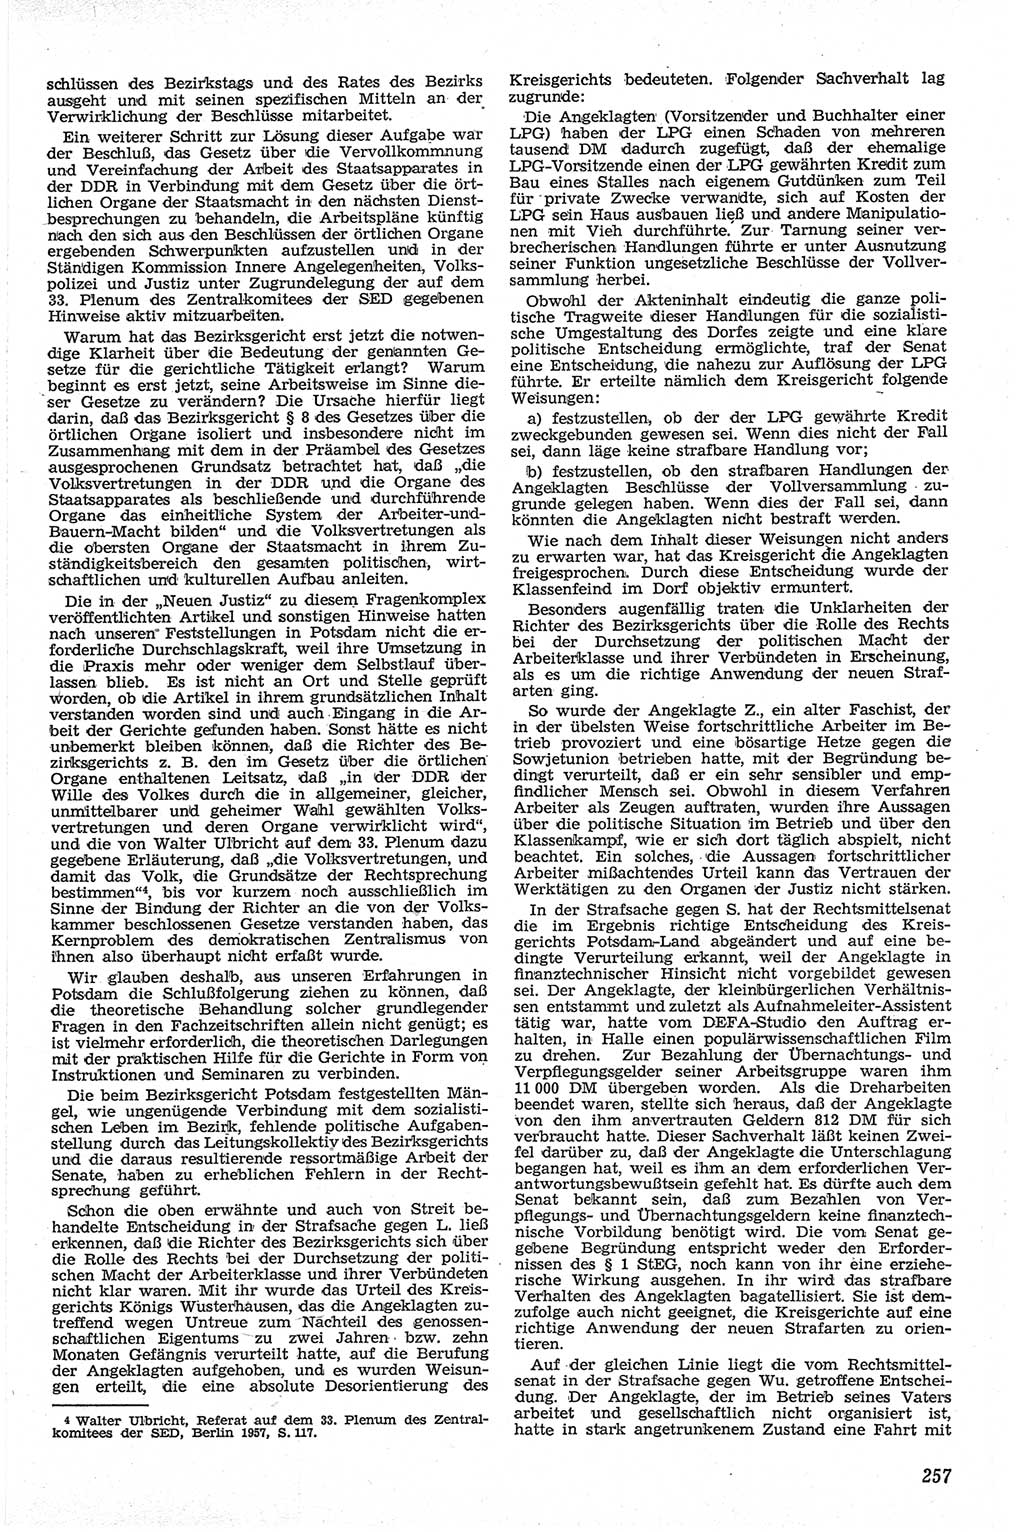 Neue Justiz (NJ), Zeitschrift für Recht und Rechtswissenschaft [Deutsche Demokratische Republik (DDR)], 13. Jahrgang 1959, Seite 257 (NJ DDR 1959, S. 257)